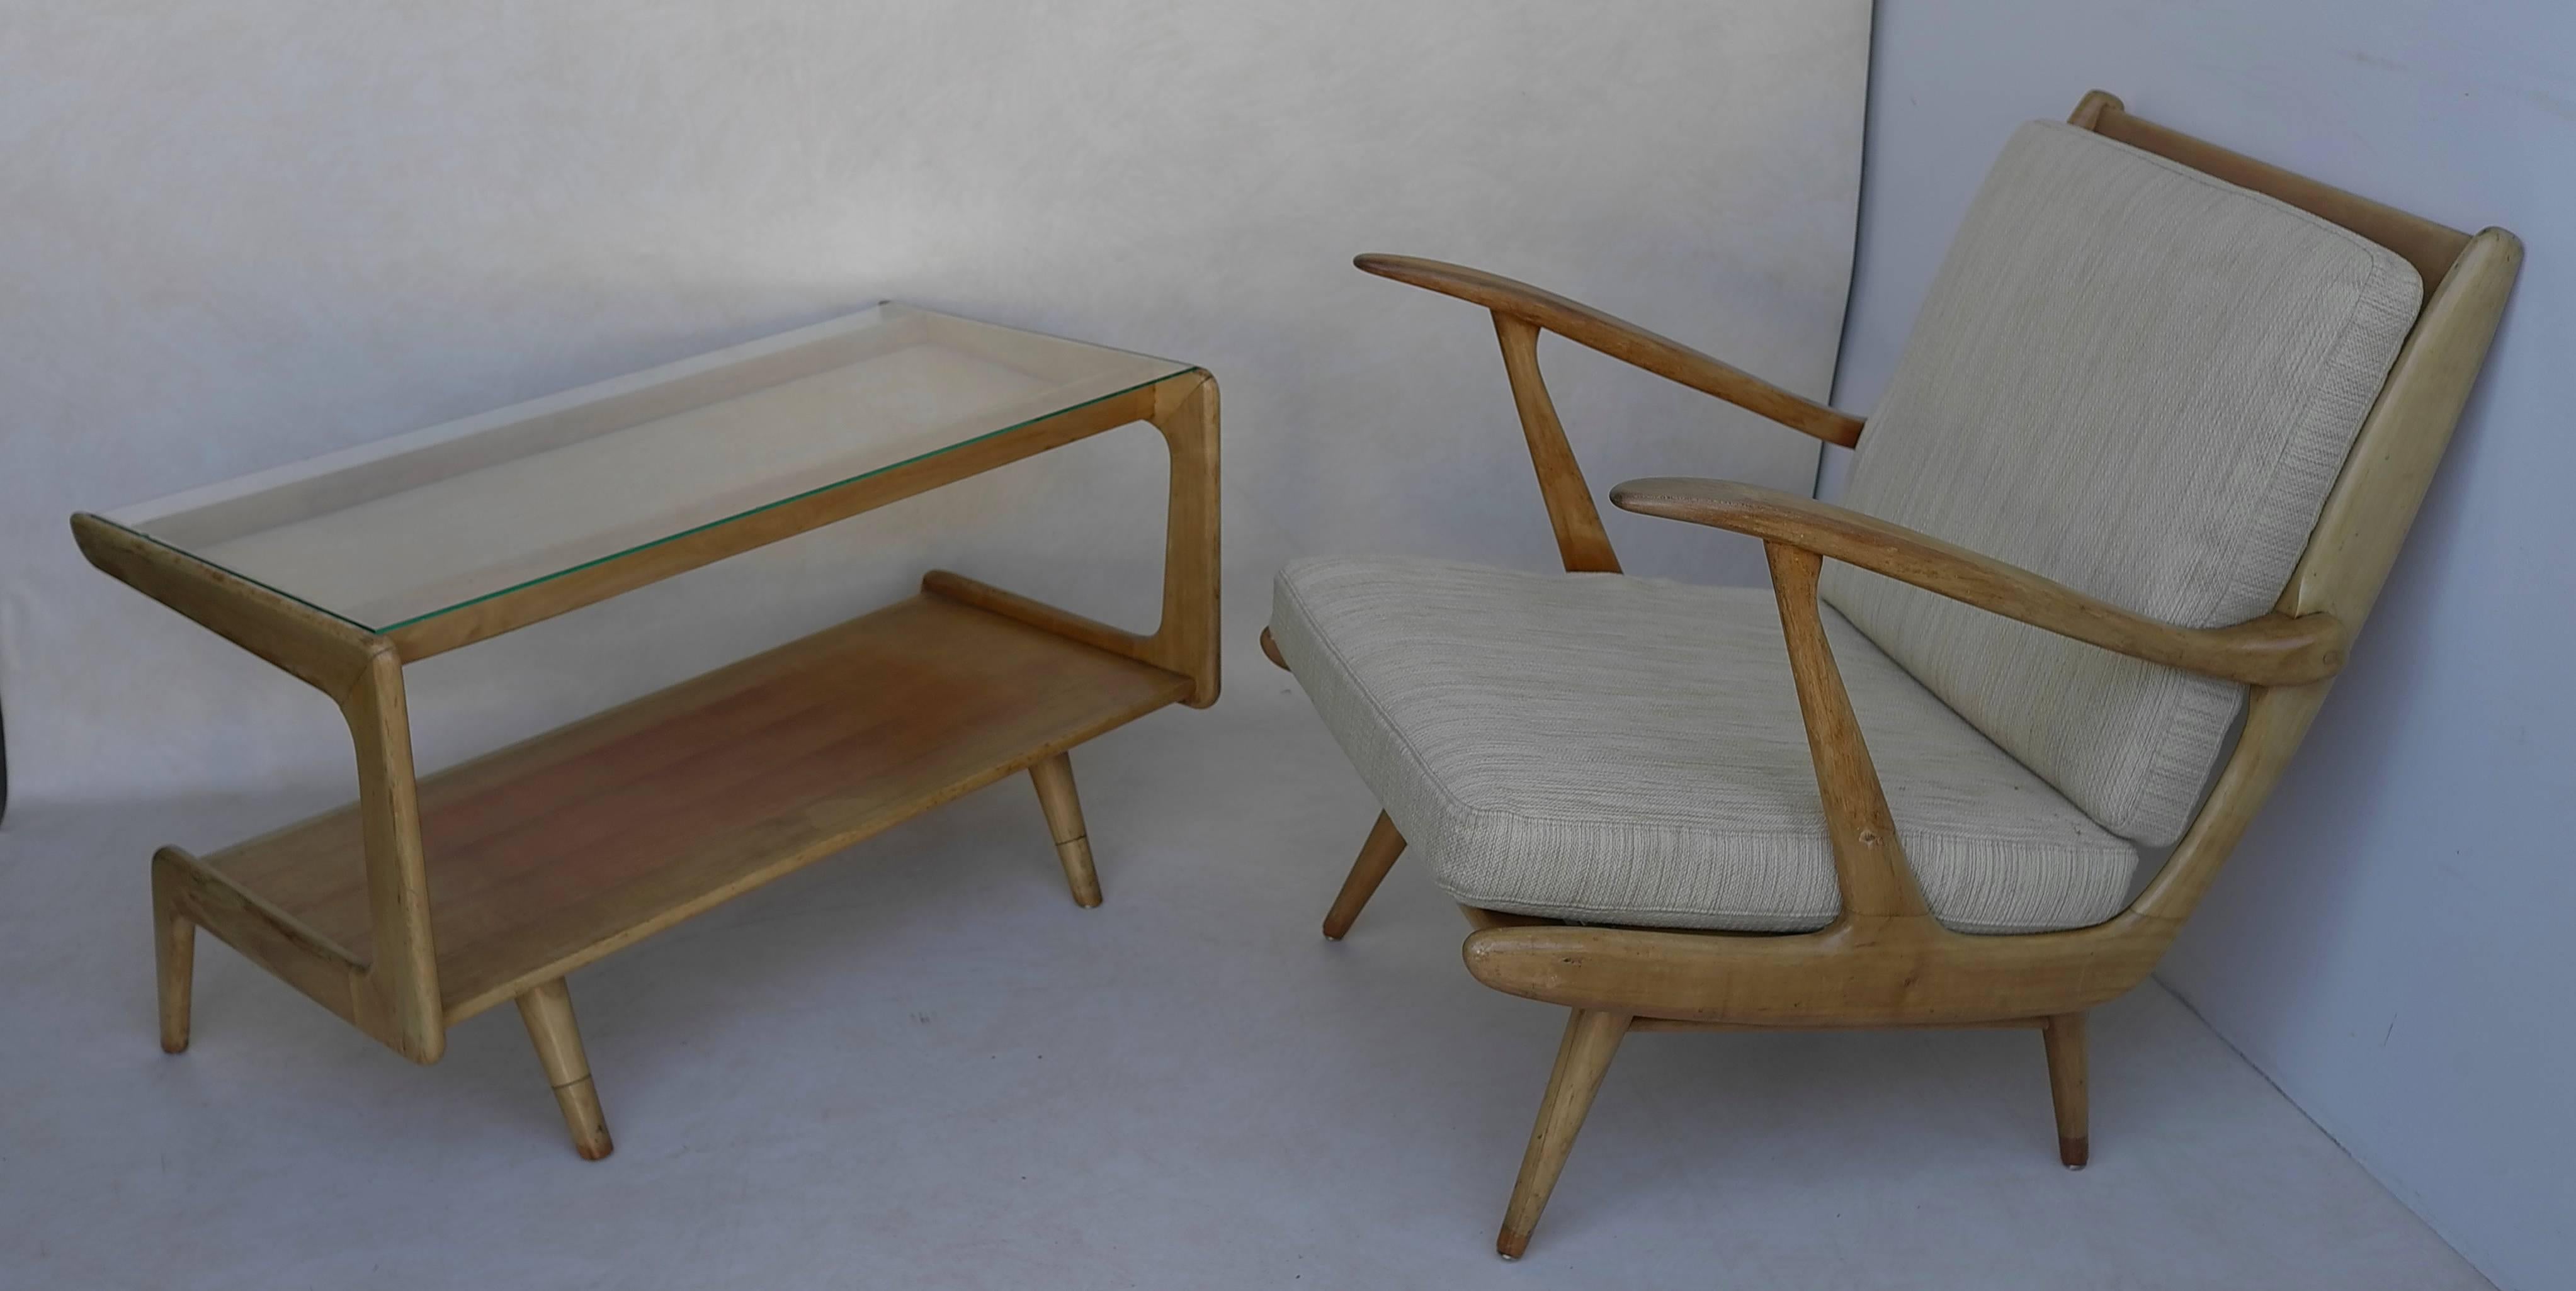 Skulpturaler Couchtisch im Stil von Gio Ponti, Italien, 1950er Jahre, aus Holz mit Glasplatte.

Es gibt auch ein passendes Sofa und einen Sessel.